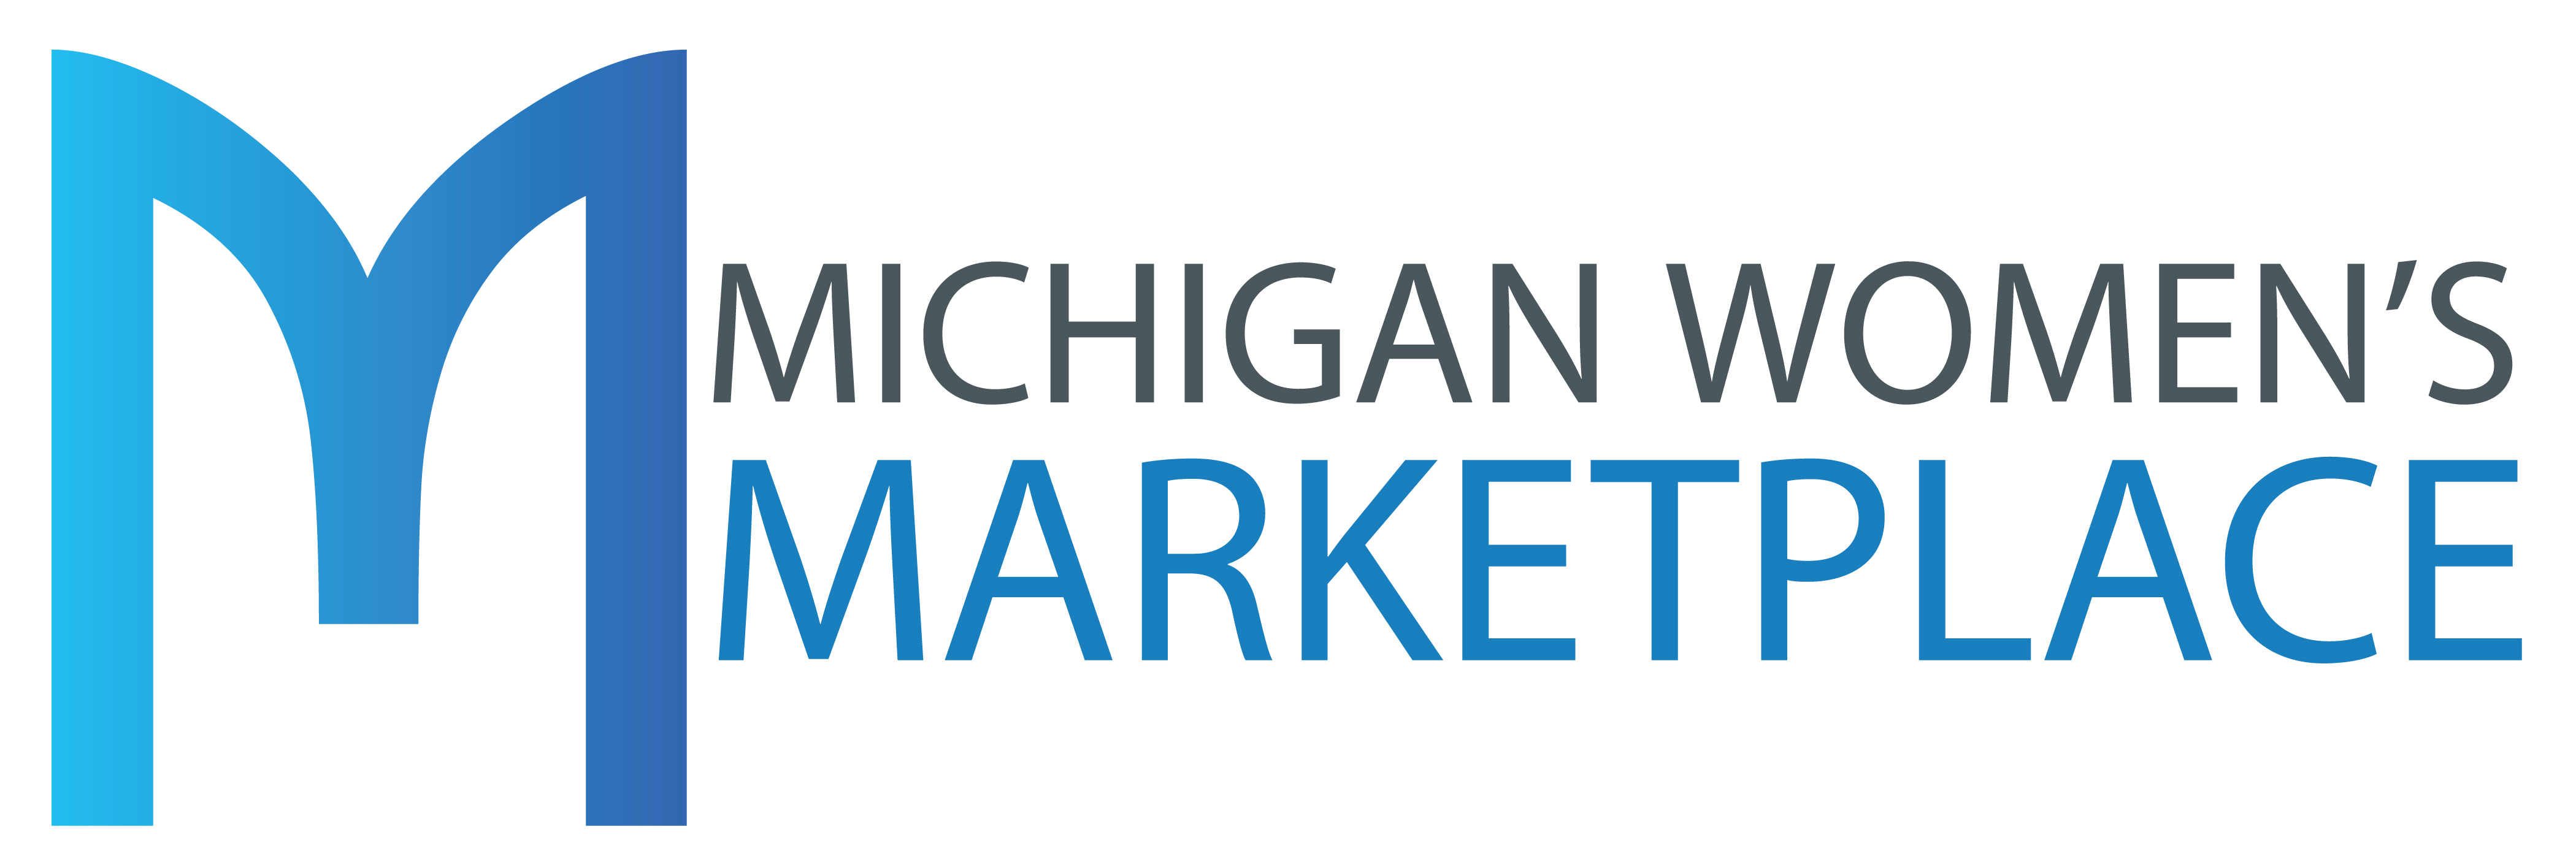 Michigan Women's Marketplace